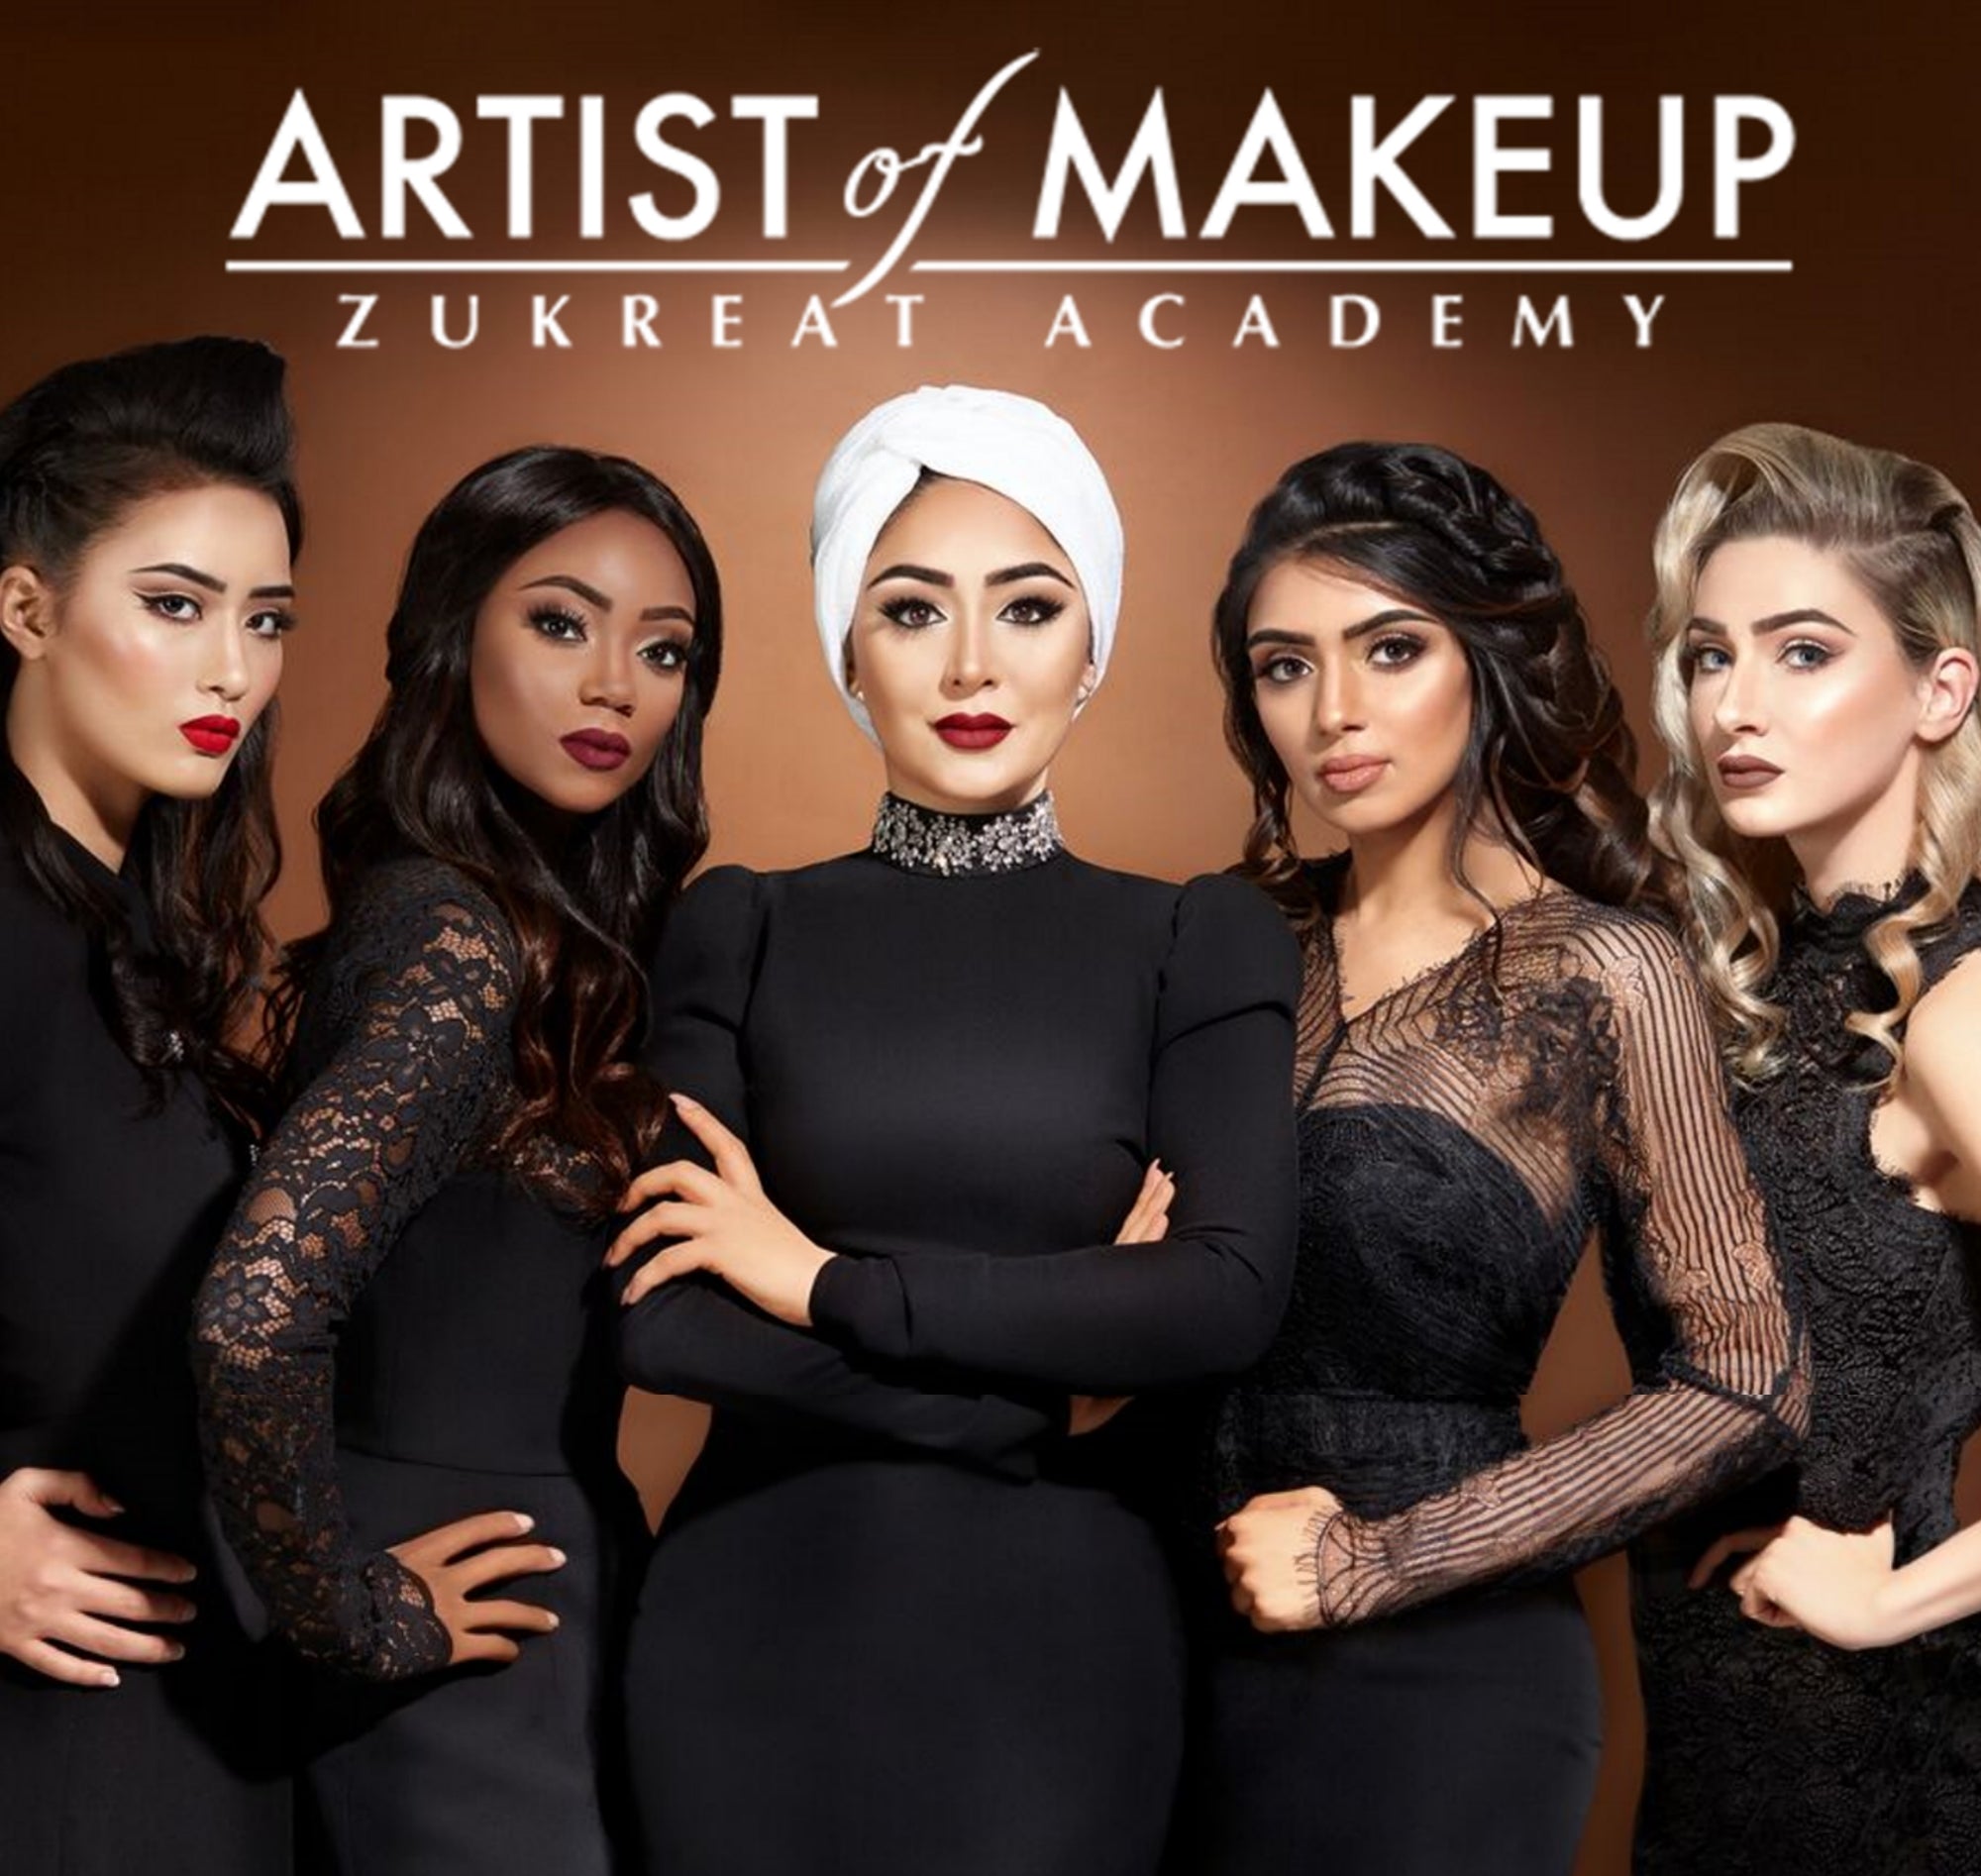 Makeup Academy Makeup Only / Makeup & Hair styling Course